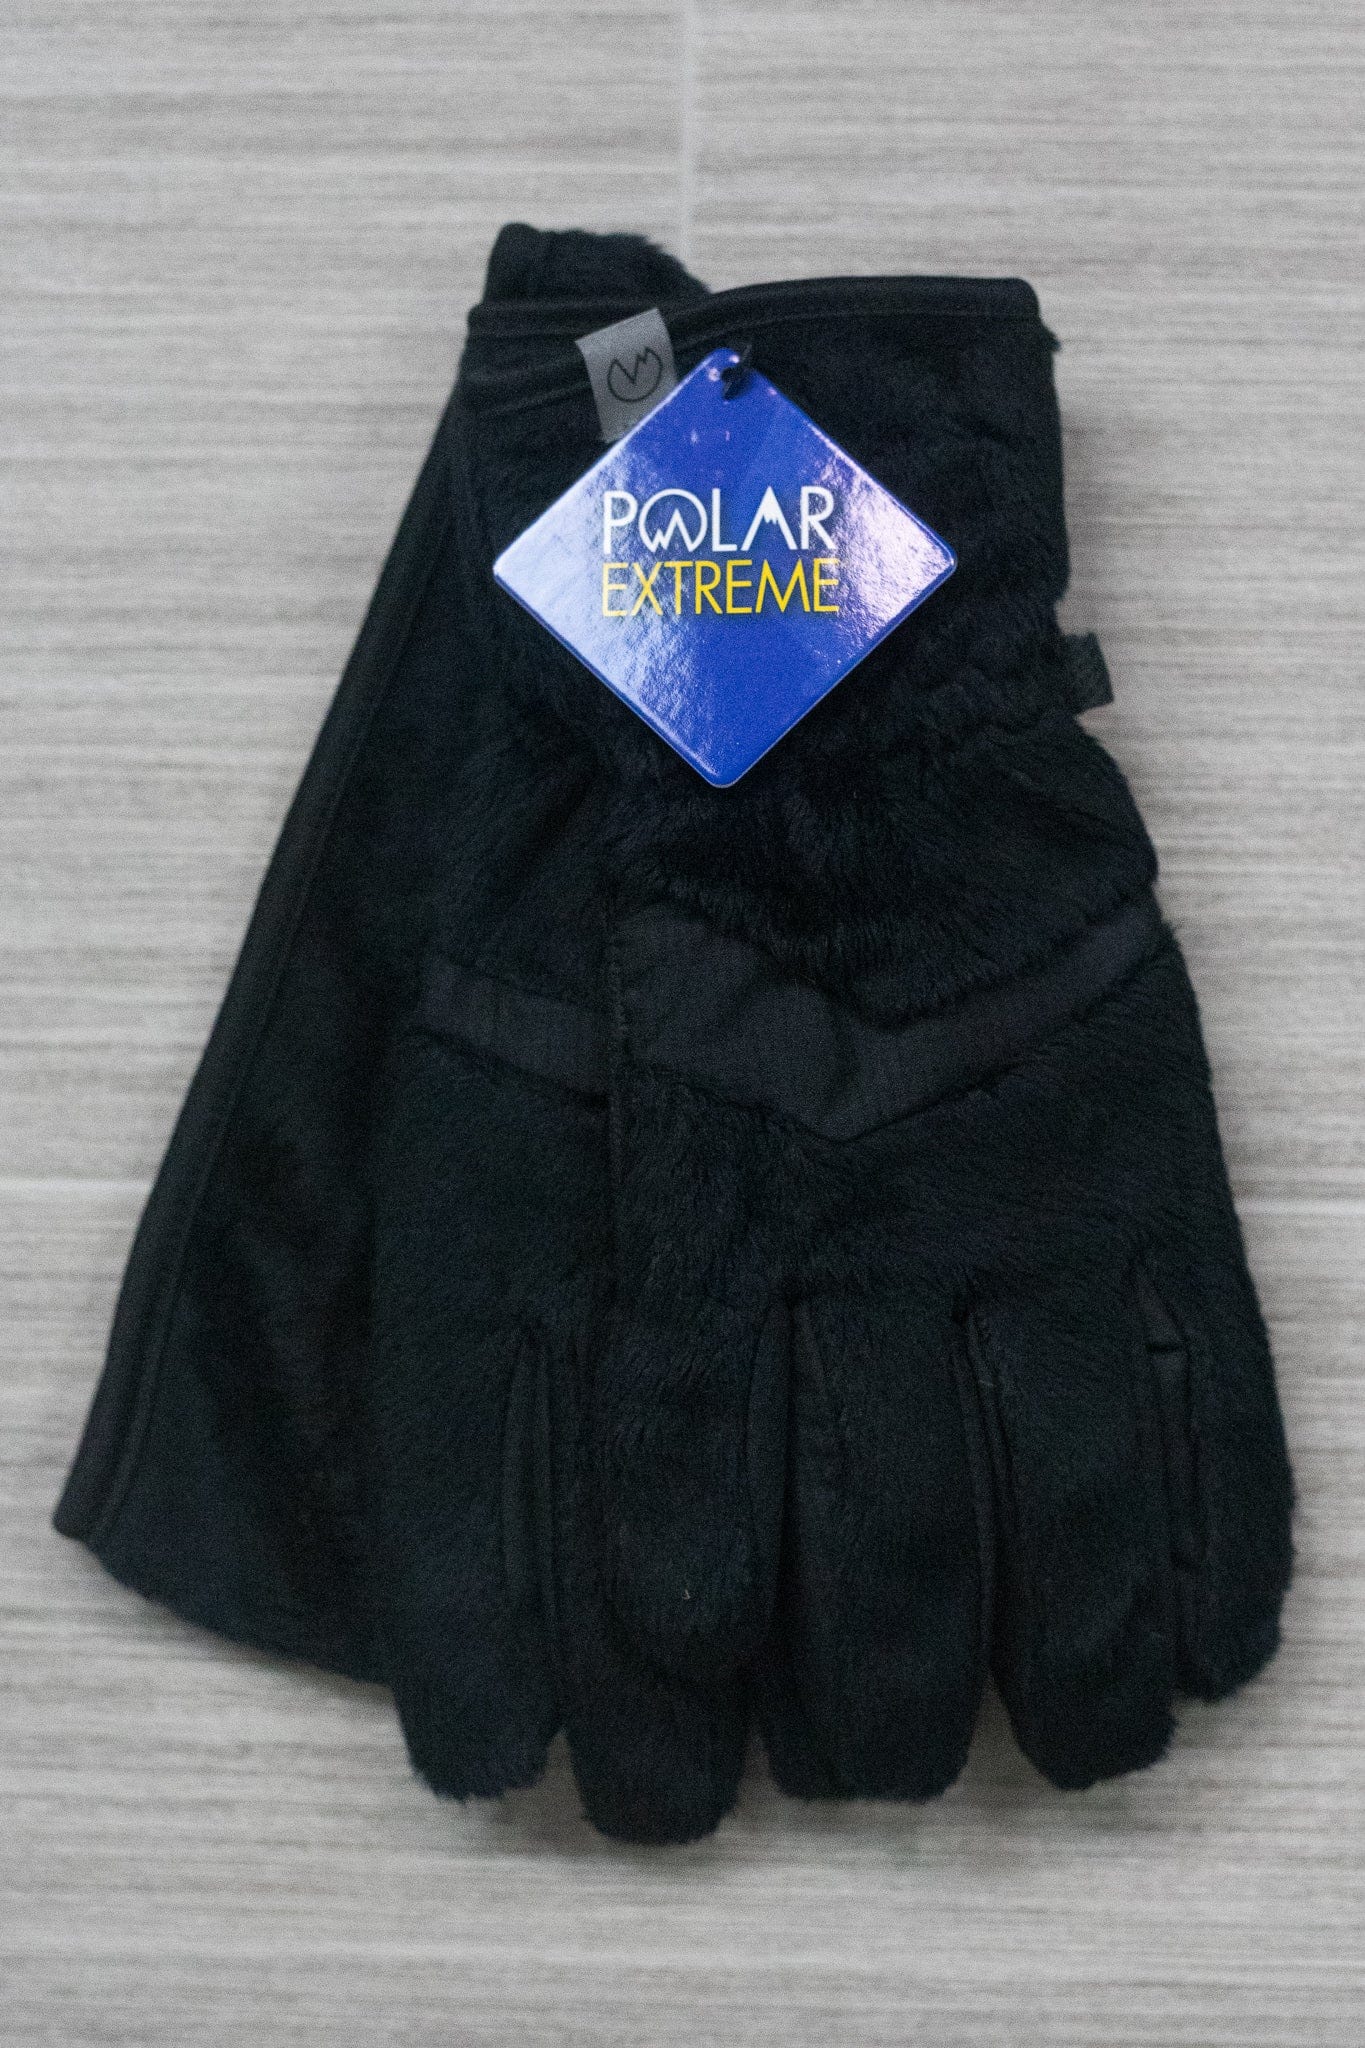 Polar Extreme Tech Gloves & Headband Set Black